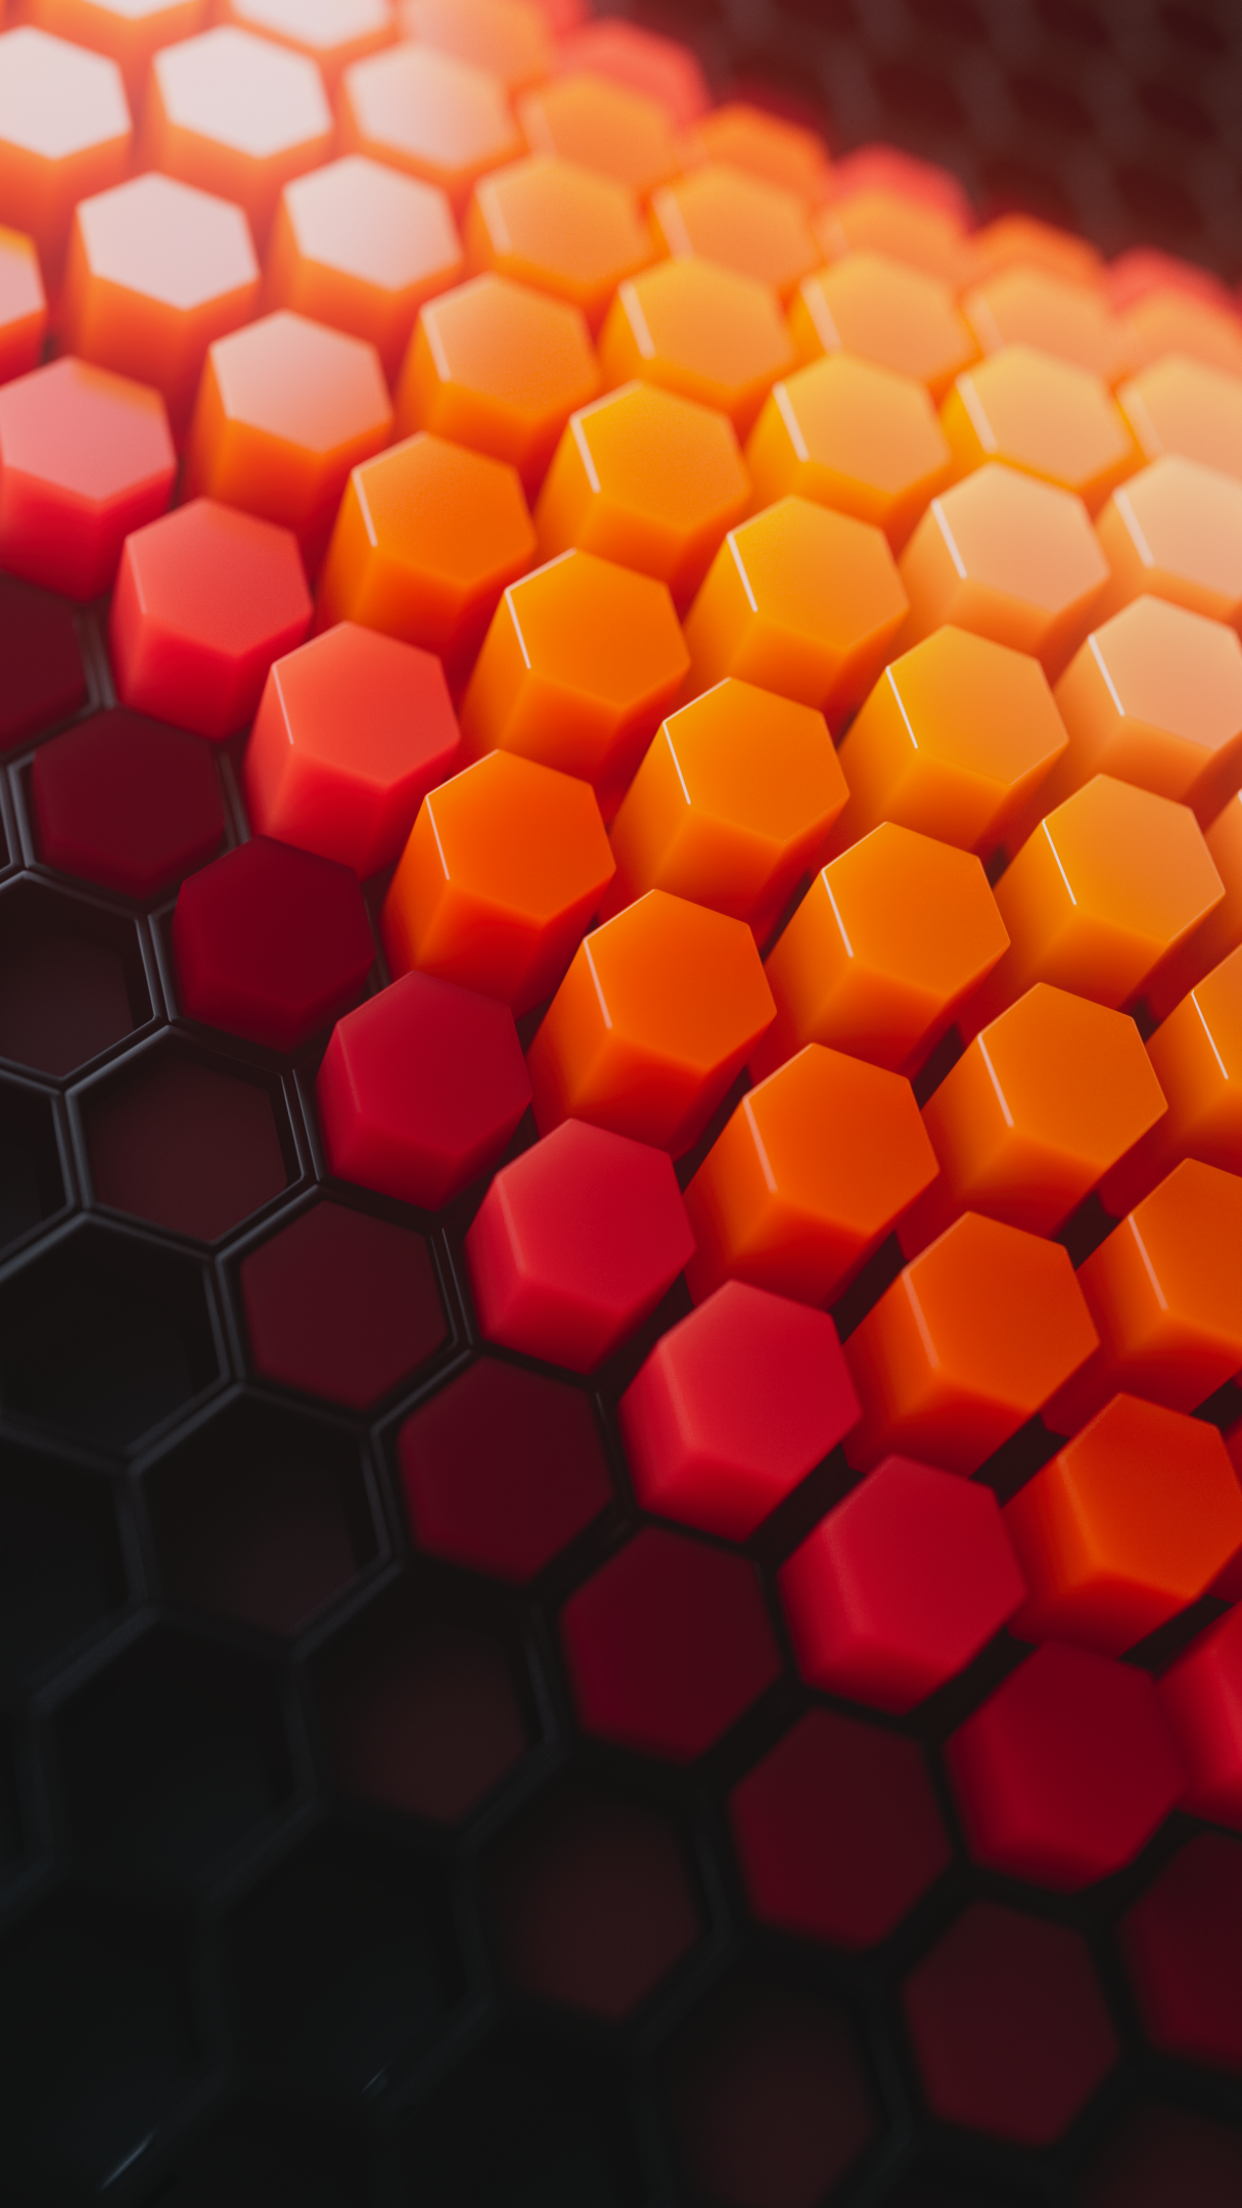 Hình nền Hexagons 4K với hoa văn trừu tượng độc đáo sẽ giúp cho màn hình máy tính của bạn trở nên độc đáo và ấn tượng hơn. Hãy để #2287 tạo nên sự khác biệt cho không gian làm việc của bạn. Với màu sắc và hoa văn tuyệt vời, bạn sẽ không thể không yêu thích những hình nền này.